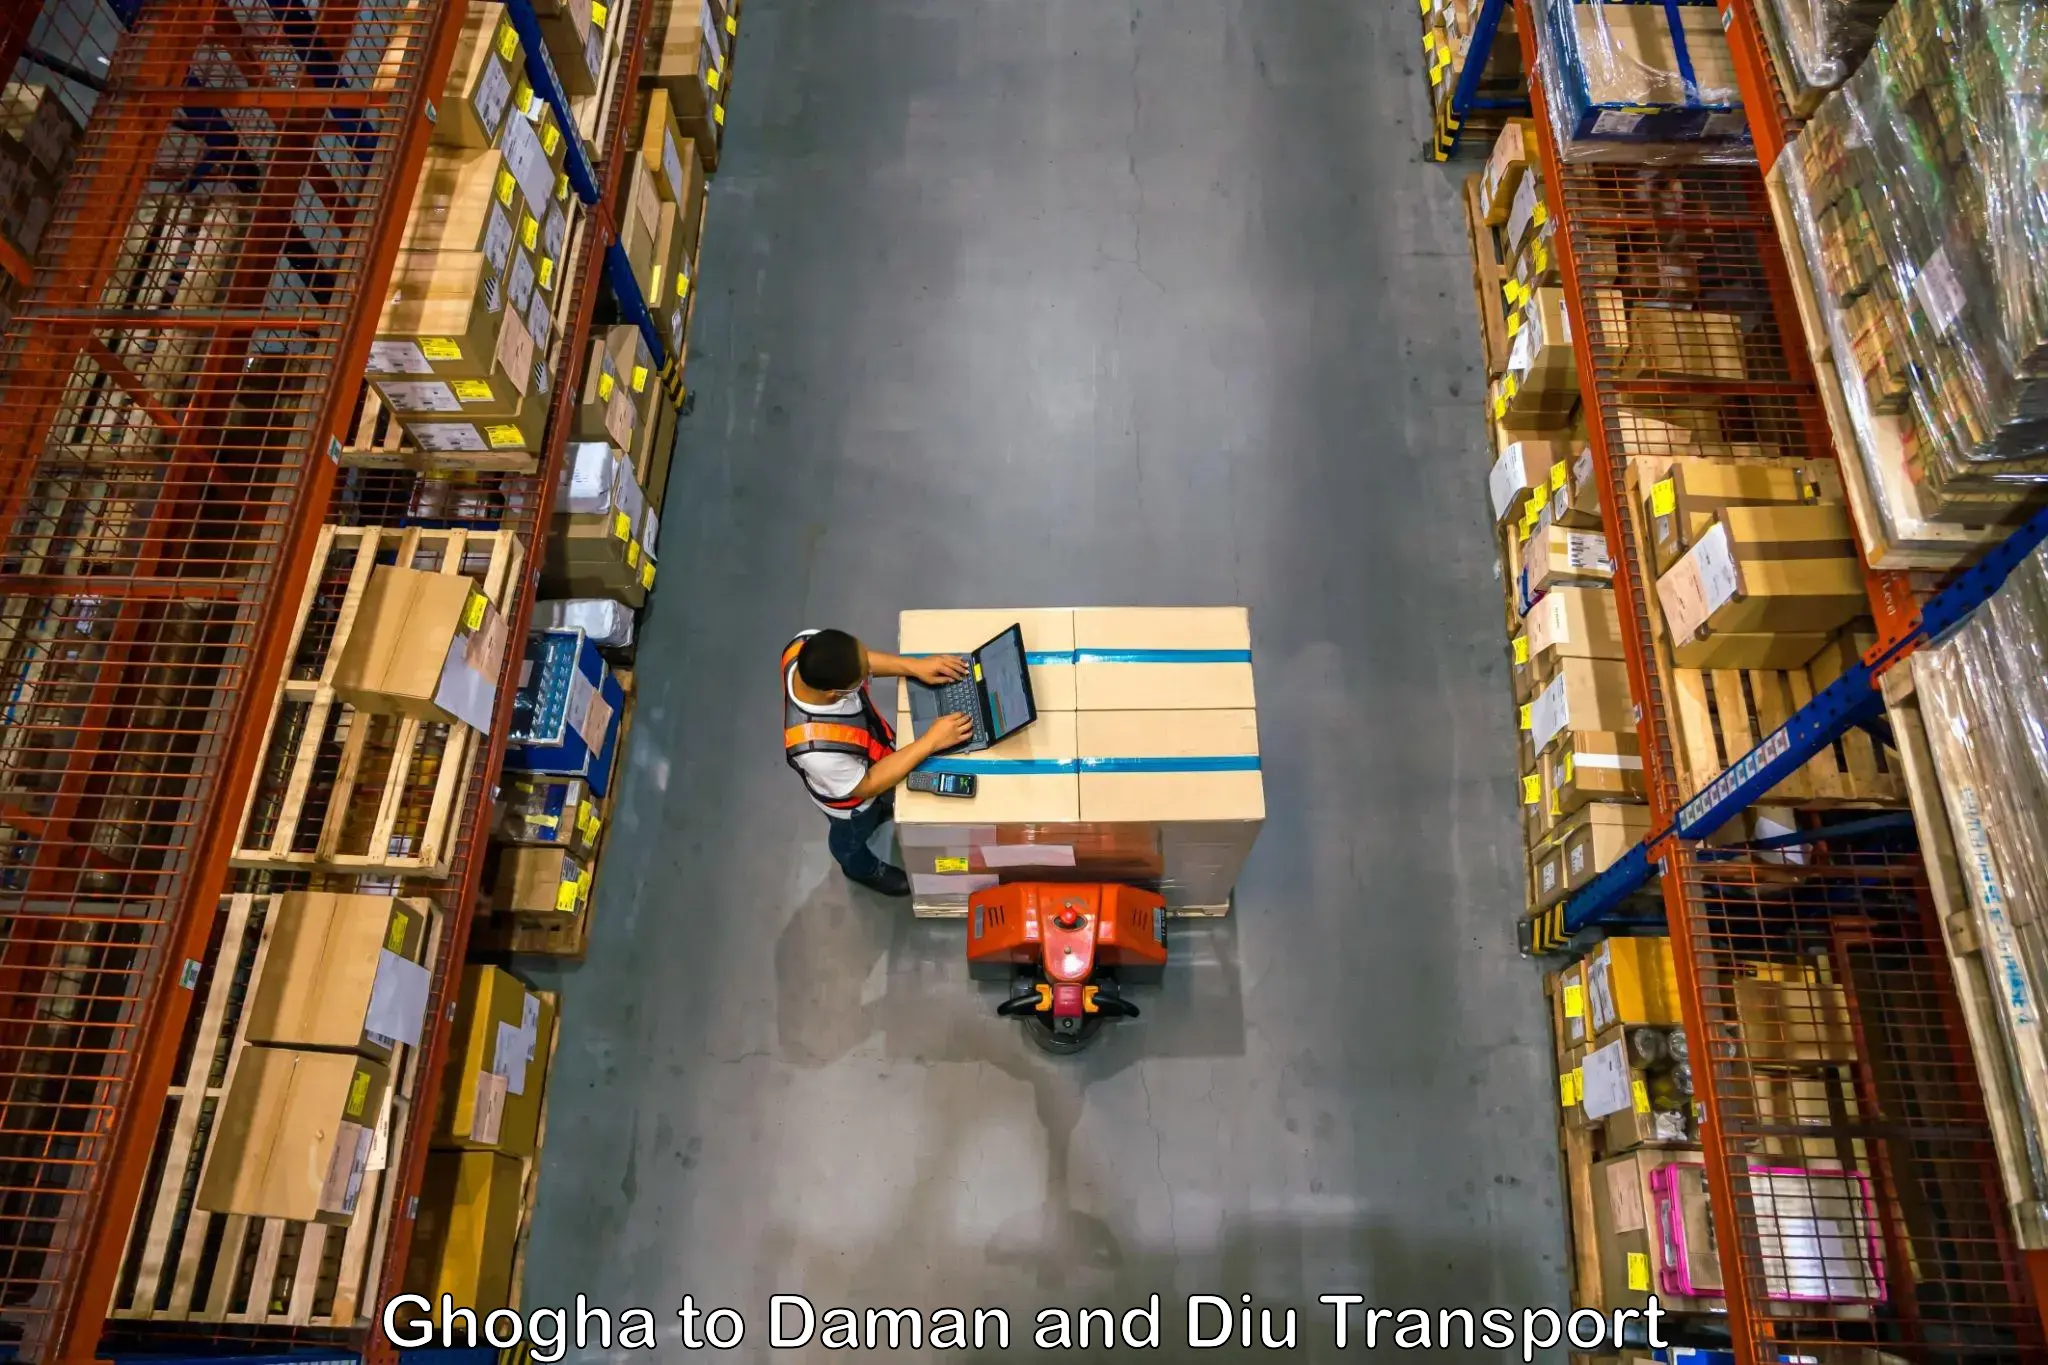 Furniture transport service Ghogha to Diu